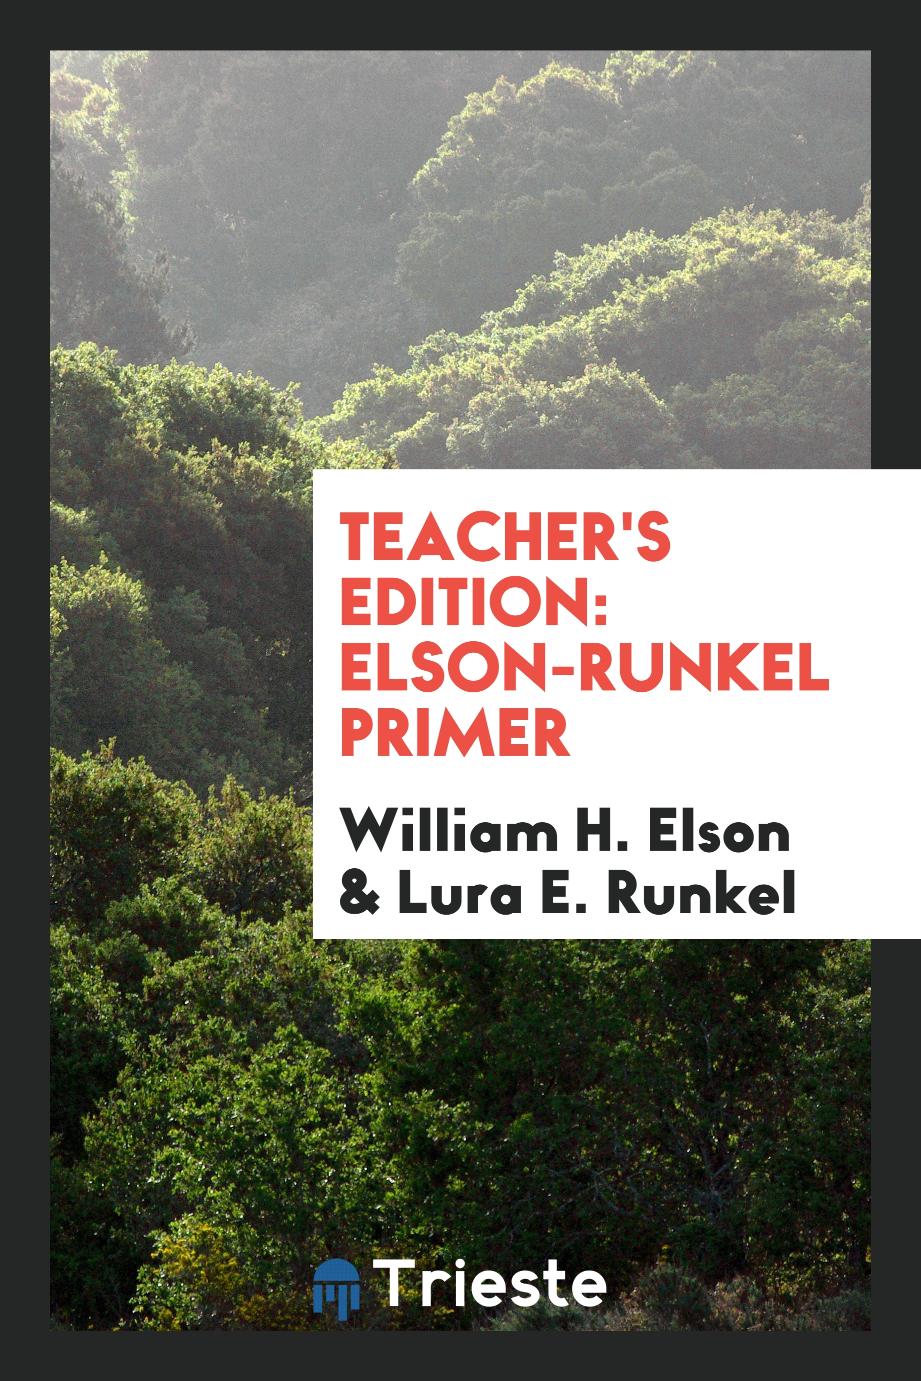 Teacher's Edition: Elson-Runkel primer